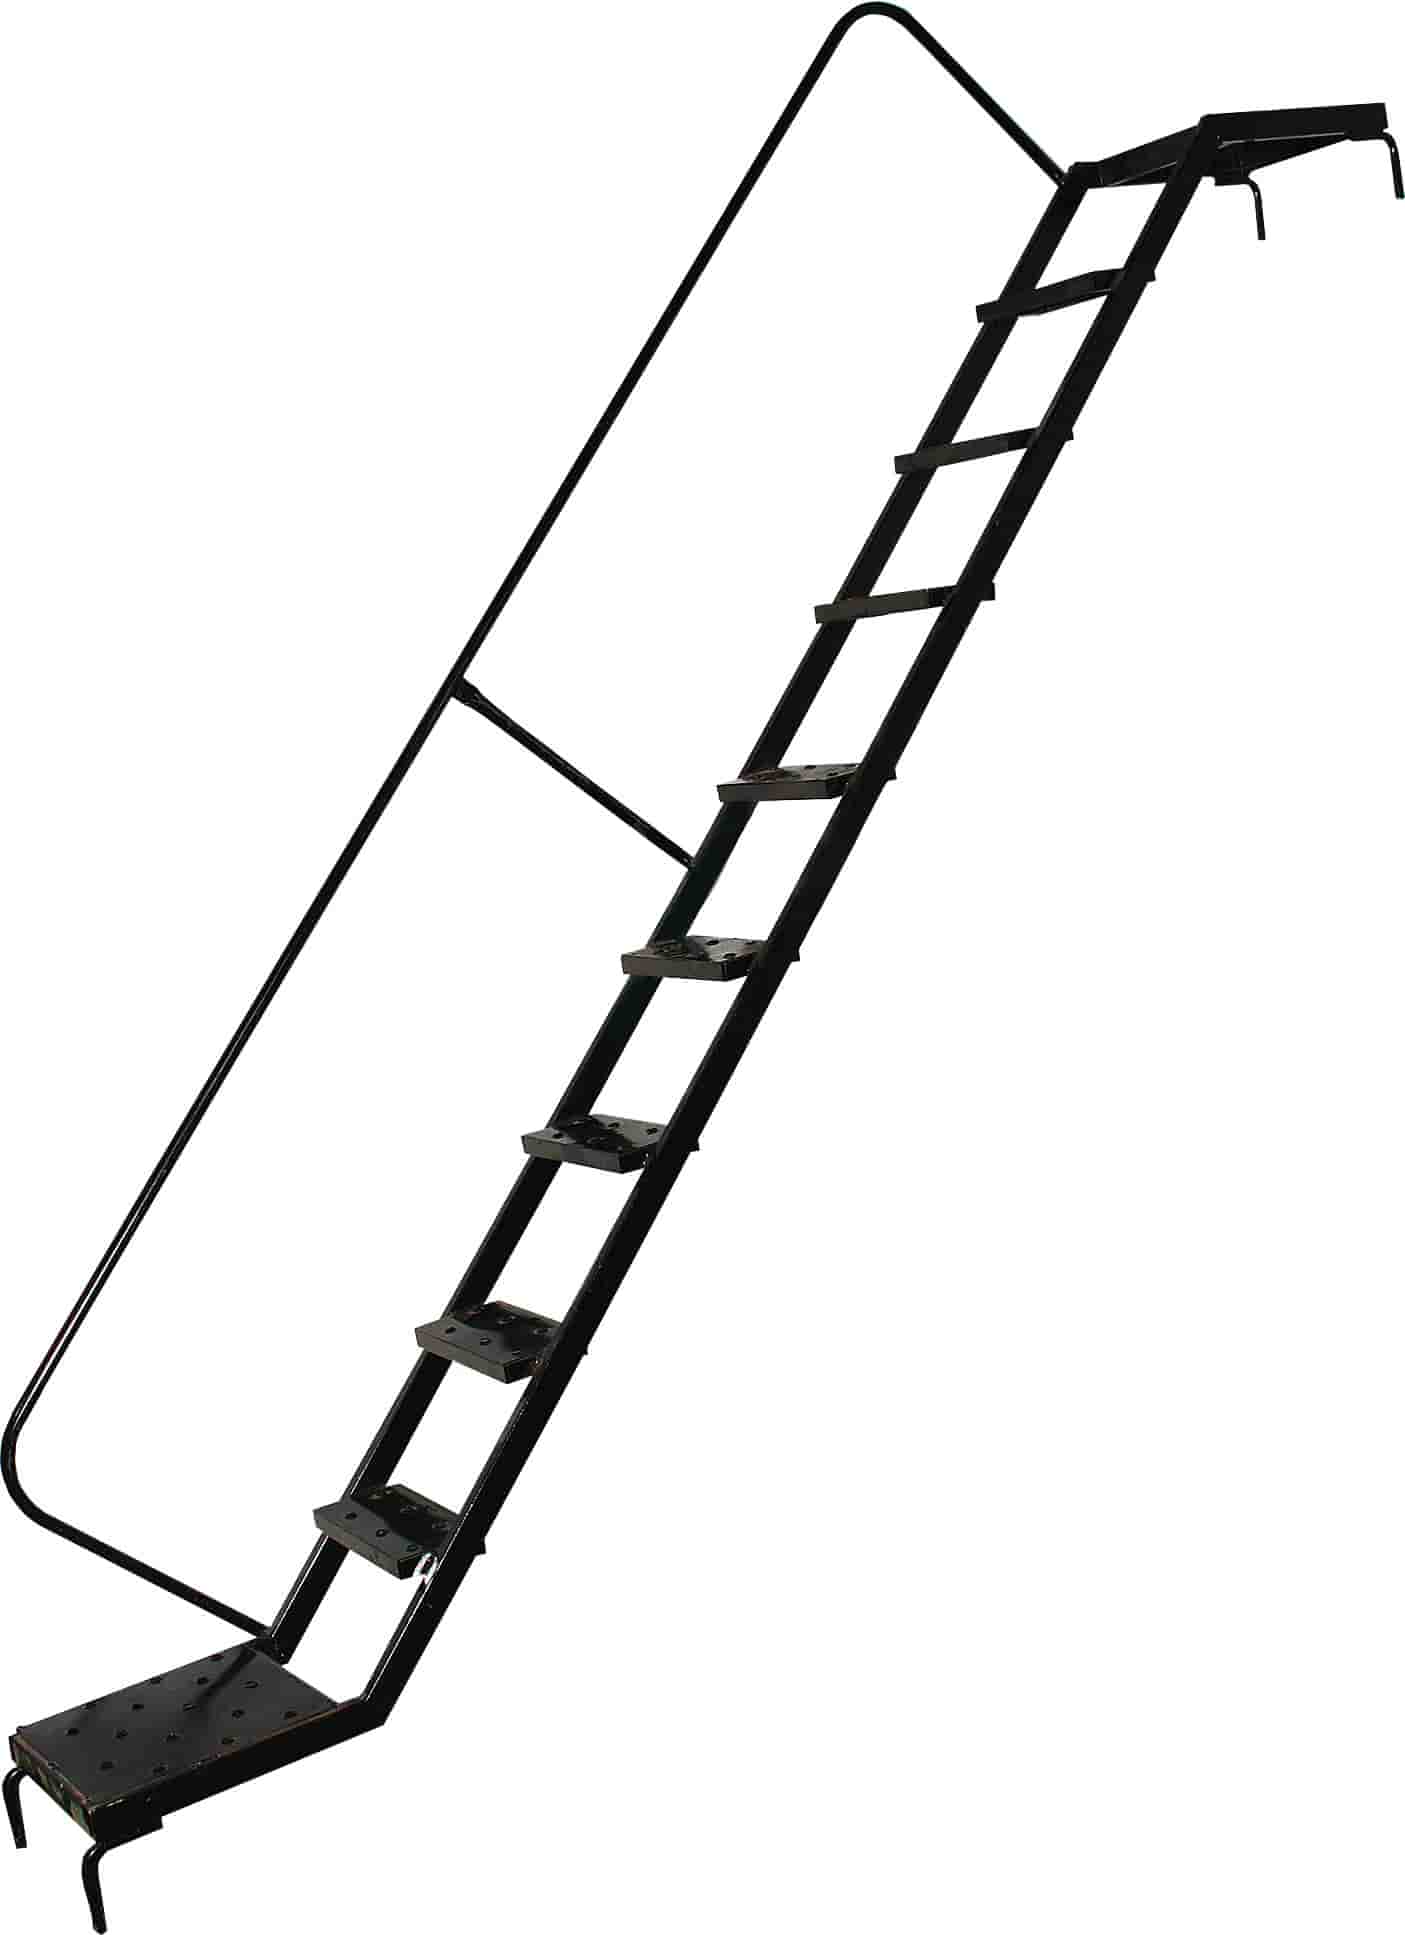 Дополнительное изображение ВТК-1 рабочая высота 17,7 м, размер площадки (1x2 м)